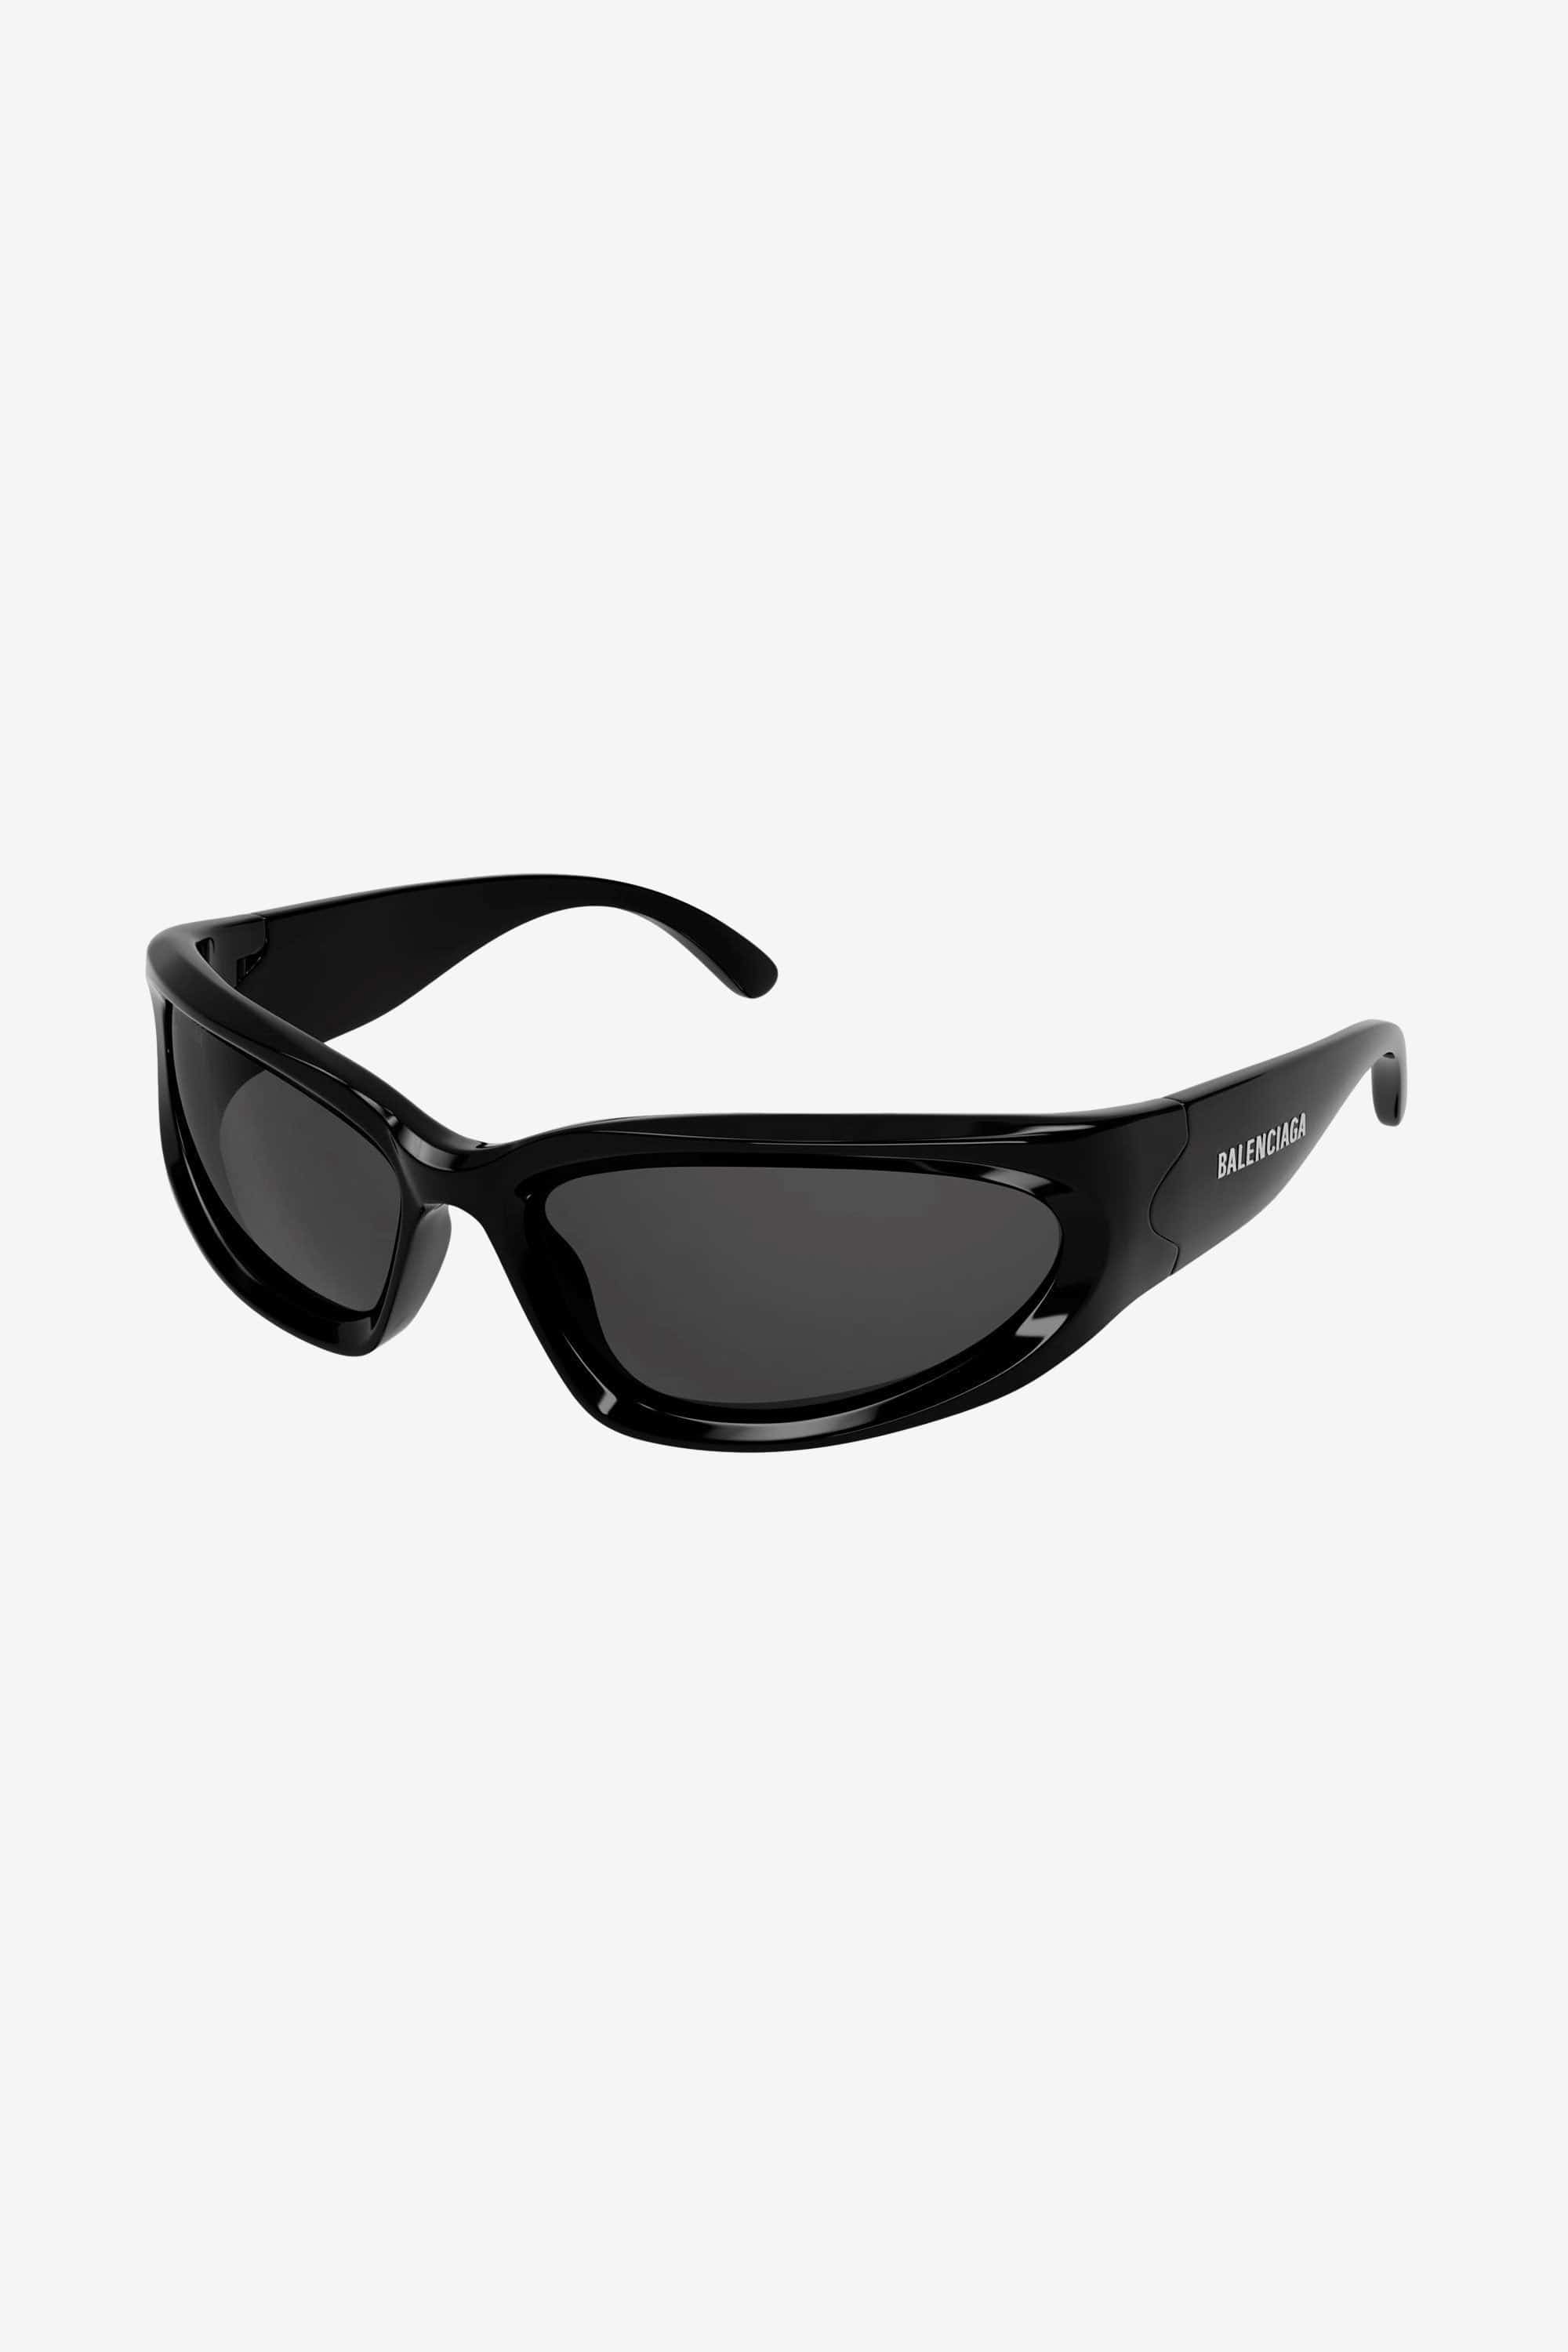 Balenciaga bold wrap around black sunglasses – Eyewear Club